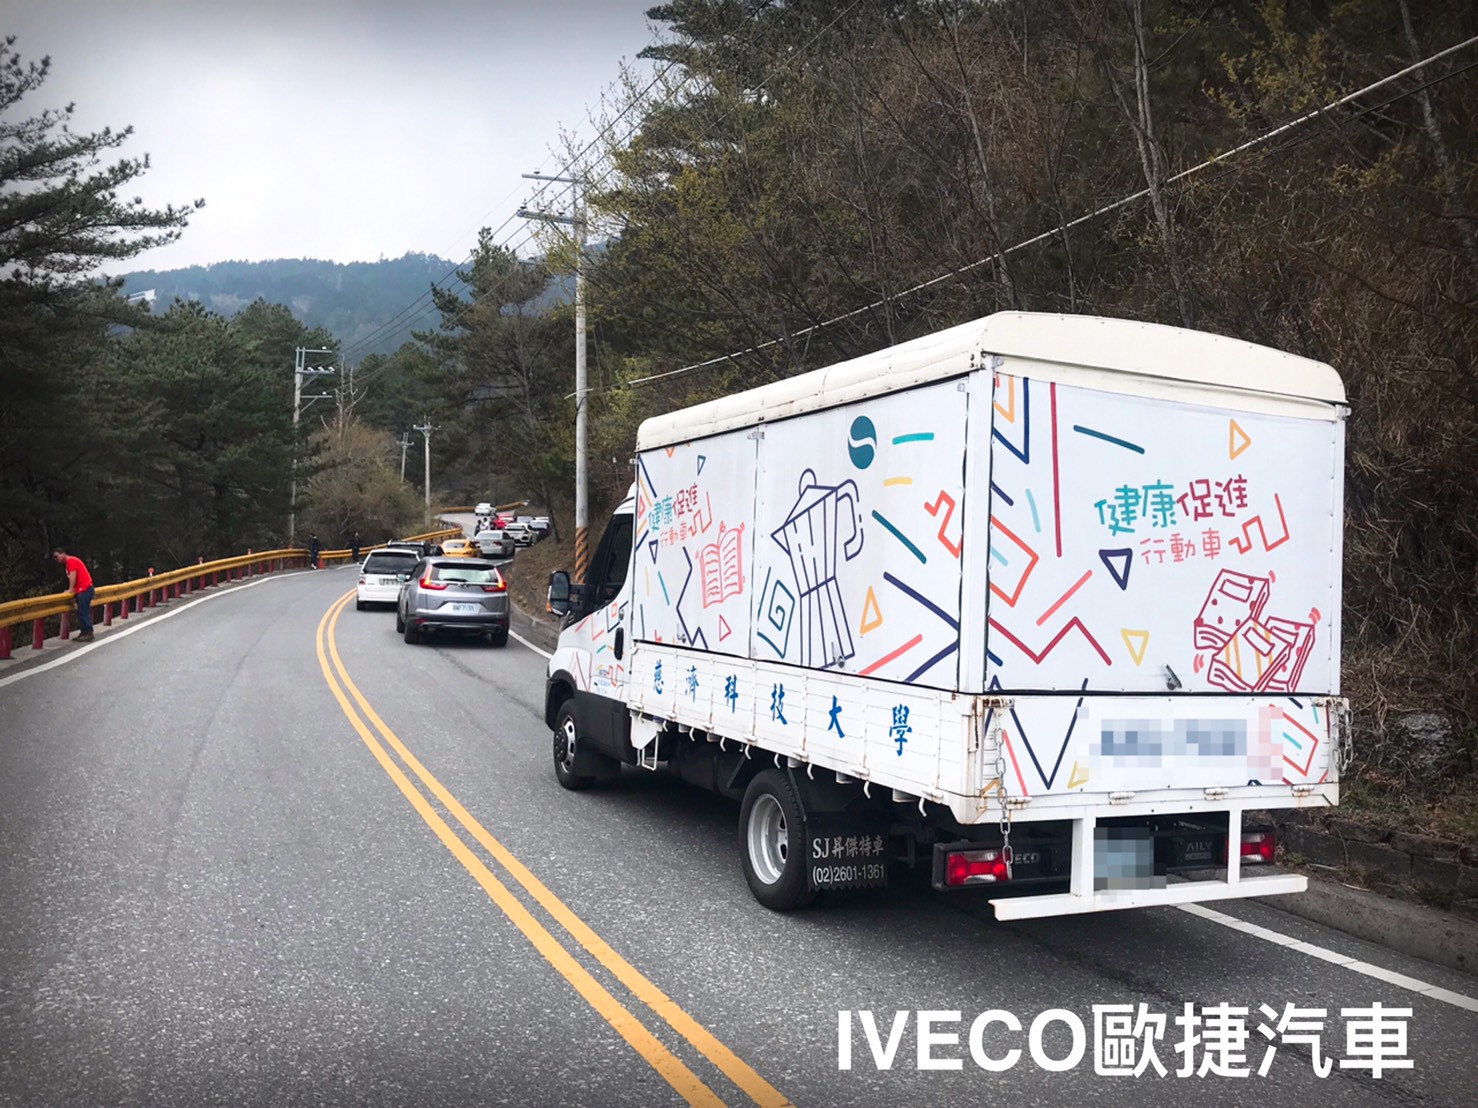 IVECO貨車定期保養